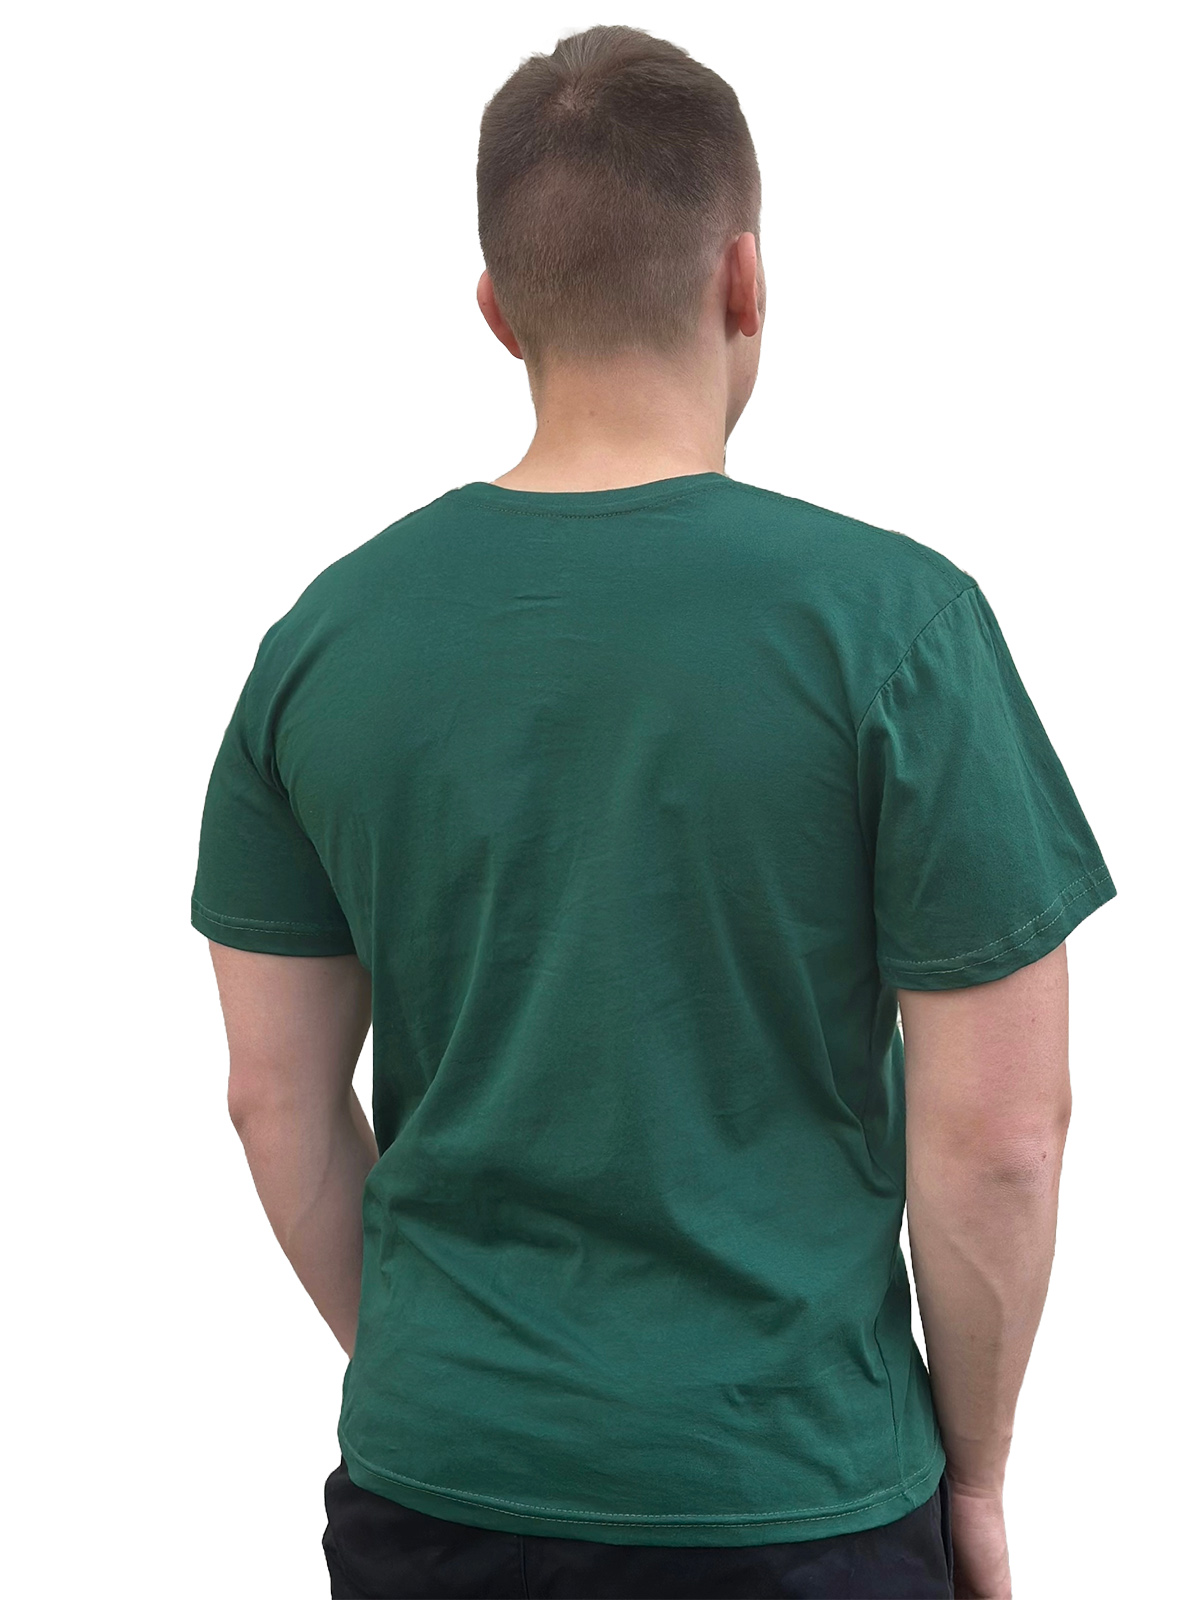 Однотонная зеленая футболка - купить недорого